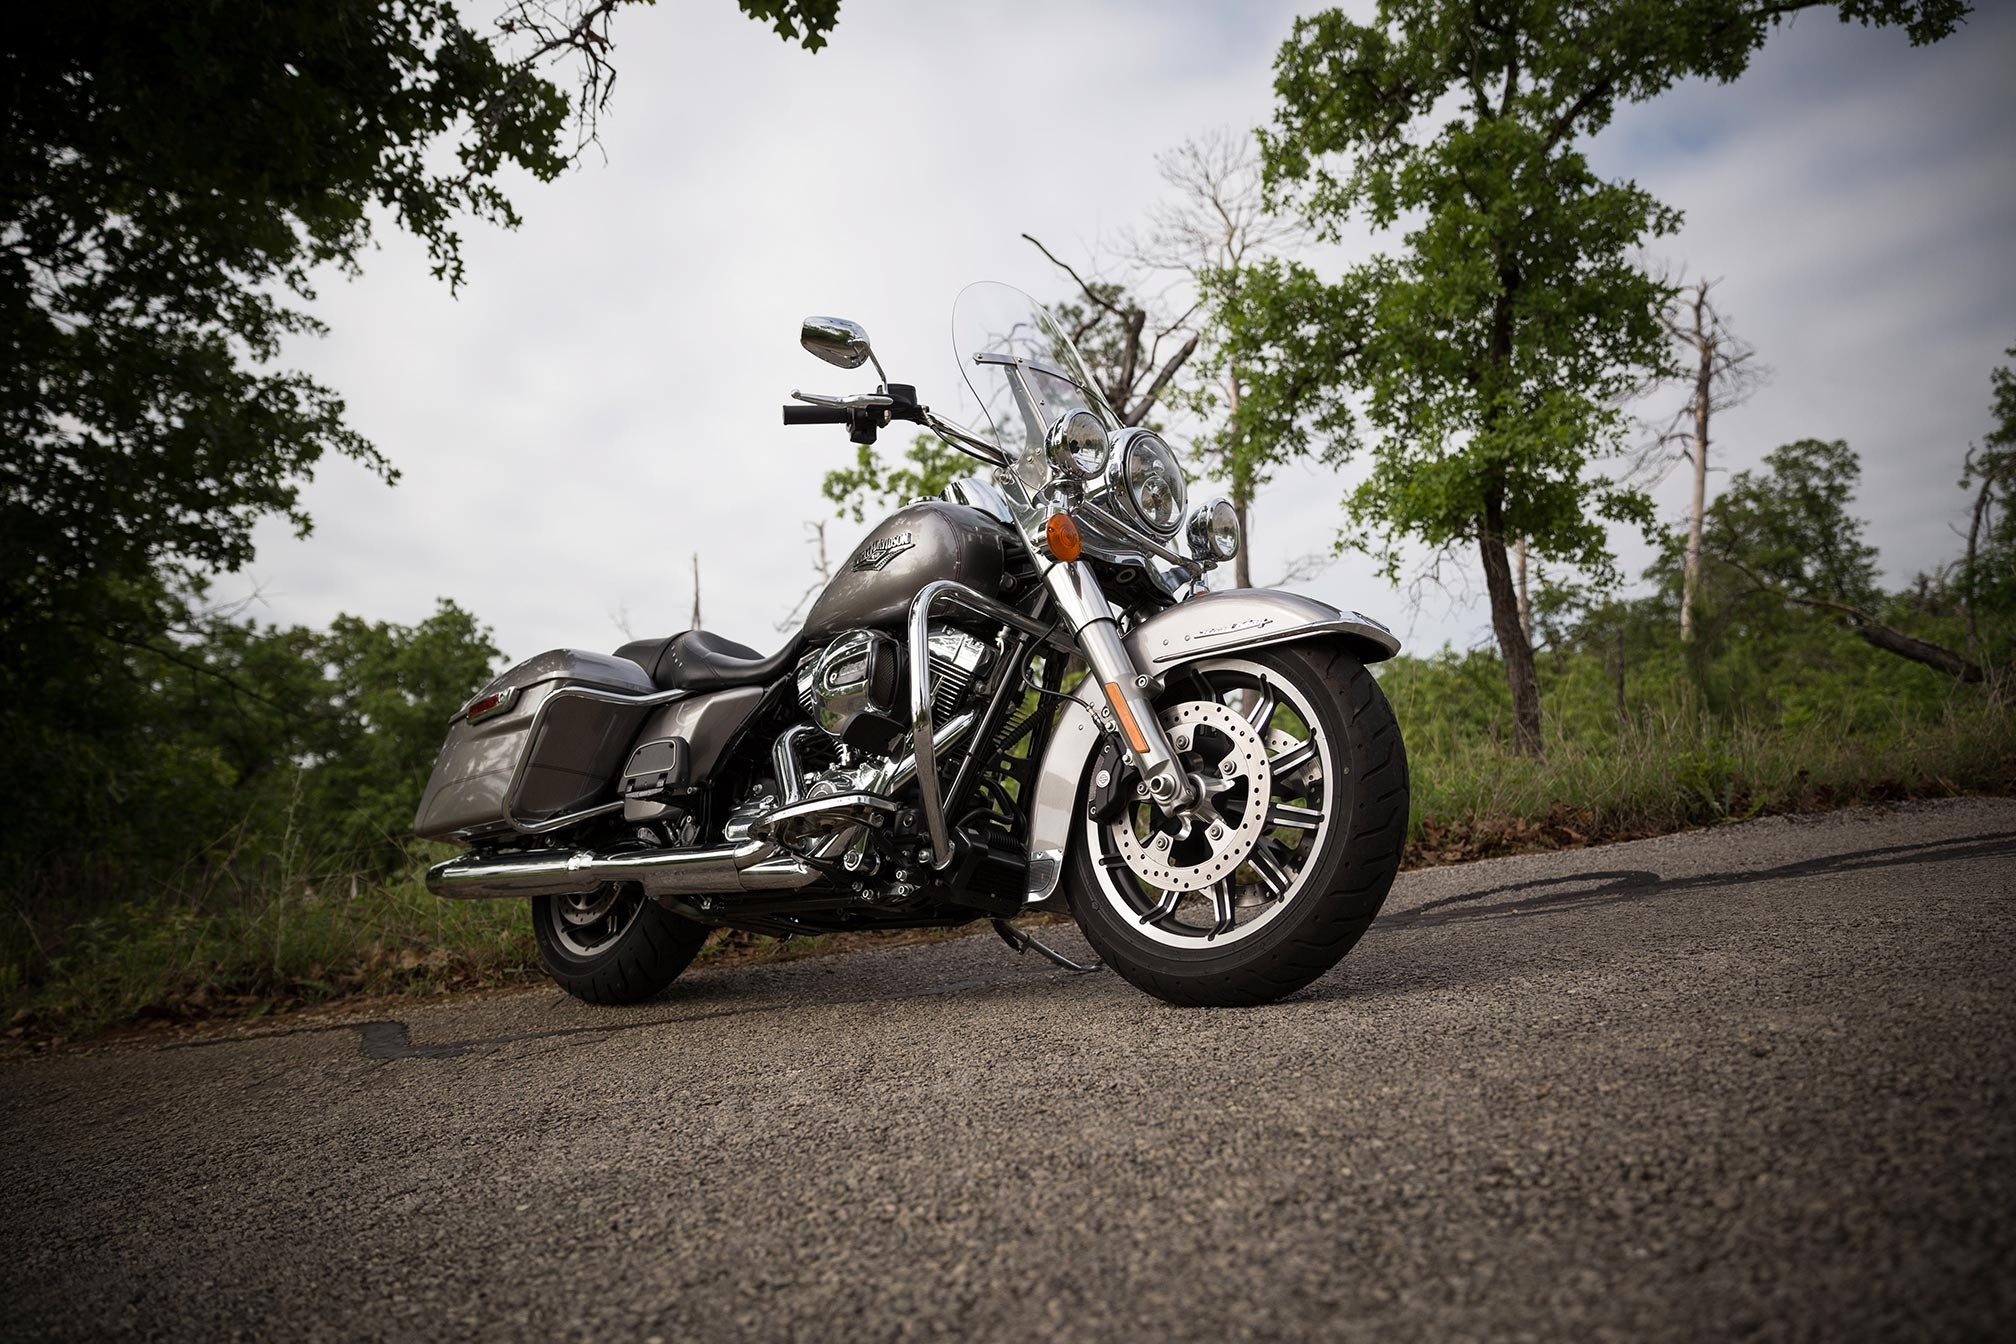 Harley-Davidson Road King, Touring road king, Motorbike bike motorcycle, Wallpaper, 2020x1350 HD Desktop